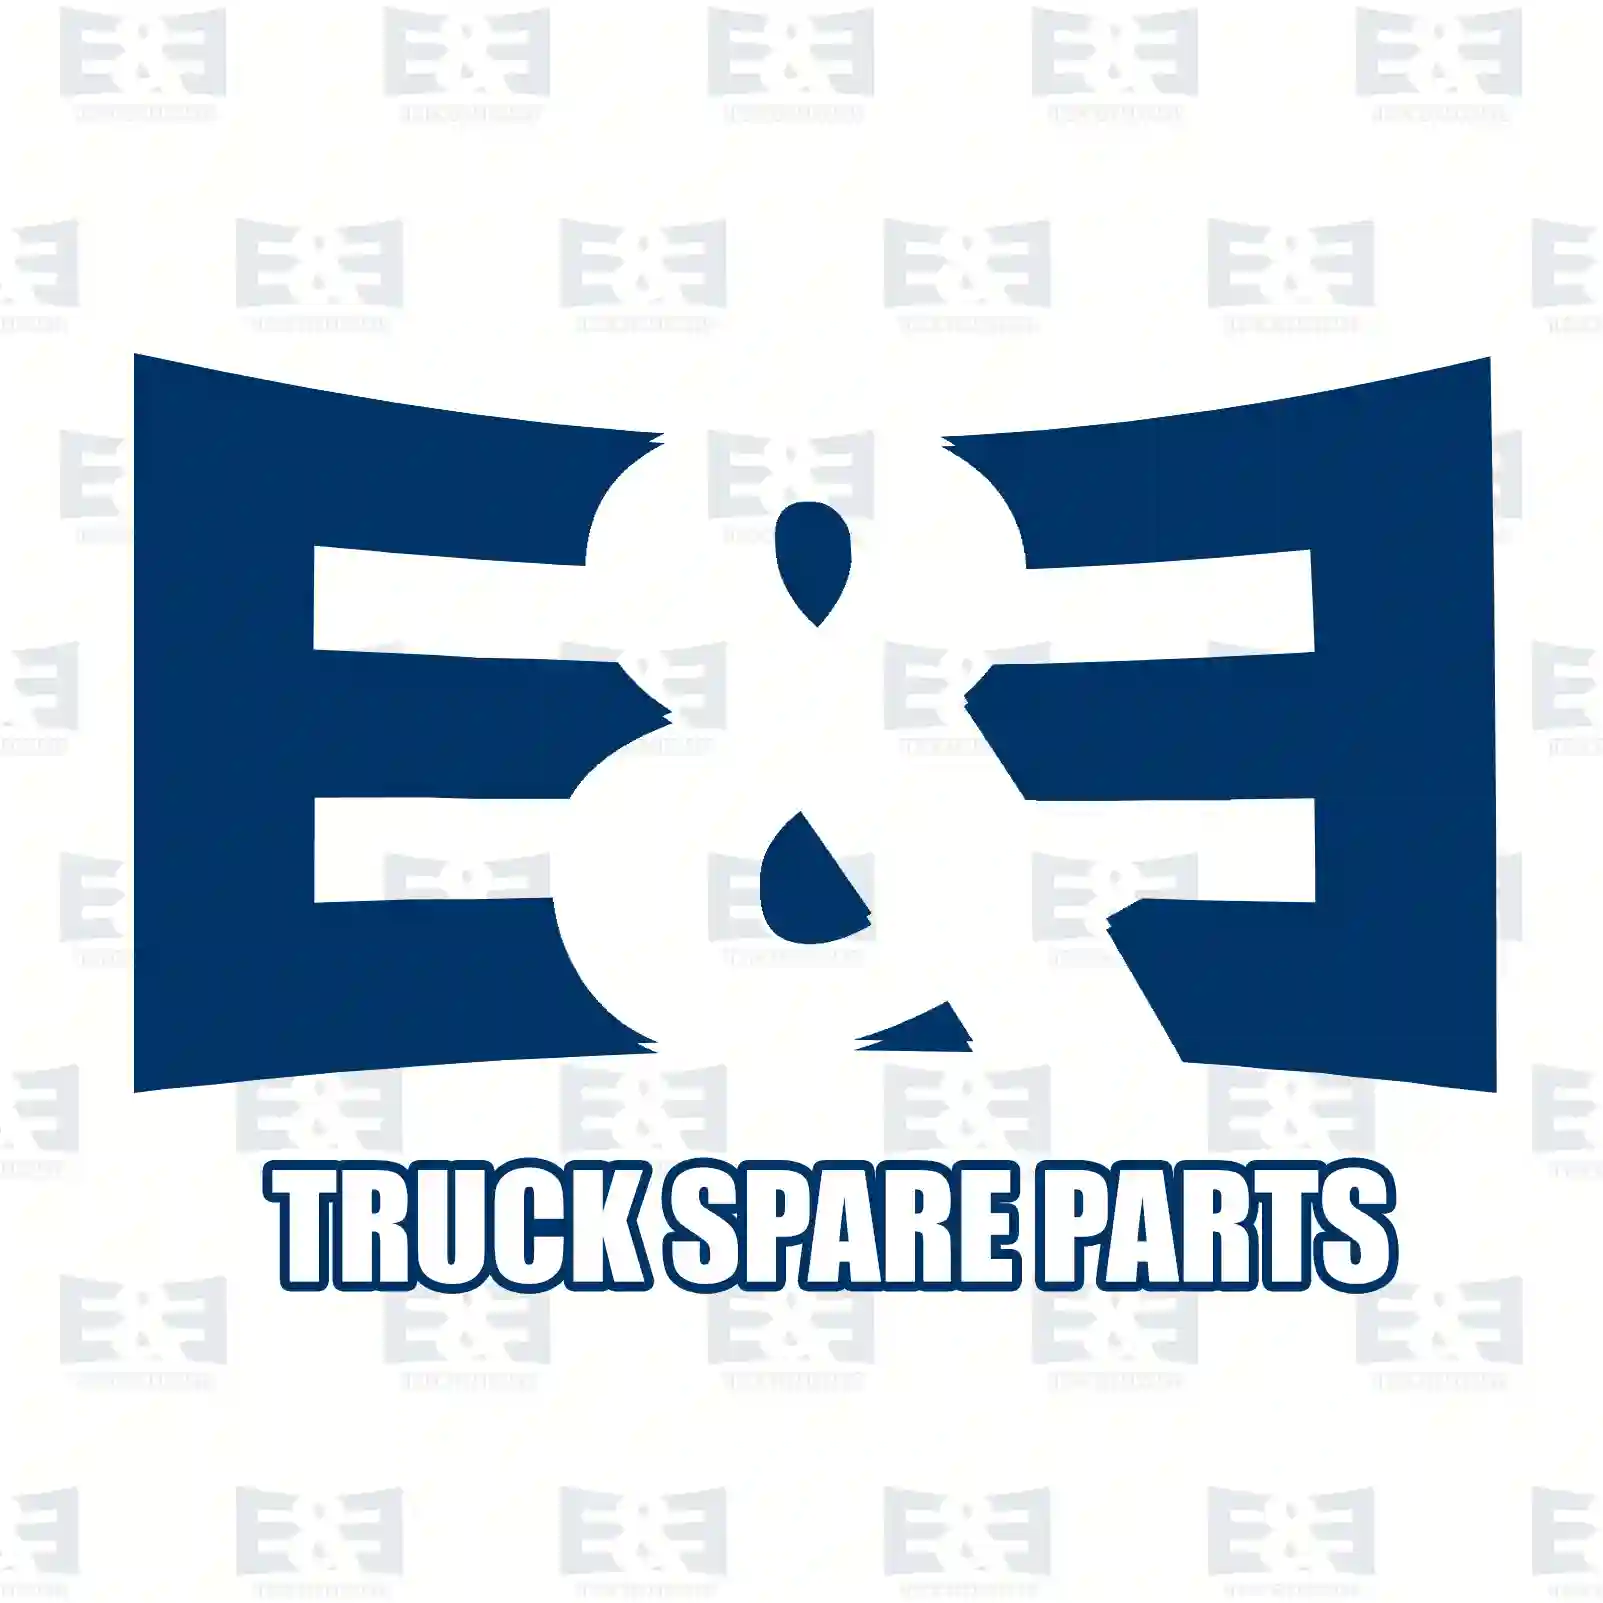 Aluminium washer, 2E2285726, 0579722, 579722, 06561900805, 0002711160, 007603014100, 007603014405, 0003008108, 237976, 35548, 957178, N0138142, N0138149, N138142 ||  2E2285726 E&E Truck Spare Parts | Truck Spare Parts, Auotomotive Spare Parts Aluminium washer, 2E2285726, 0579722, 579722, 06561900805, 0002711160, 007603014100, 007603014405, 0003008108, 237976, 35548, 957178, N0138142, N0138149, N138142 ||  2E2285726 E&E Truck Spare Parts | Truck Spare Parts, Auotomotive Spare Parts